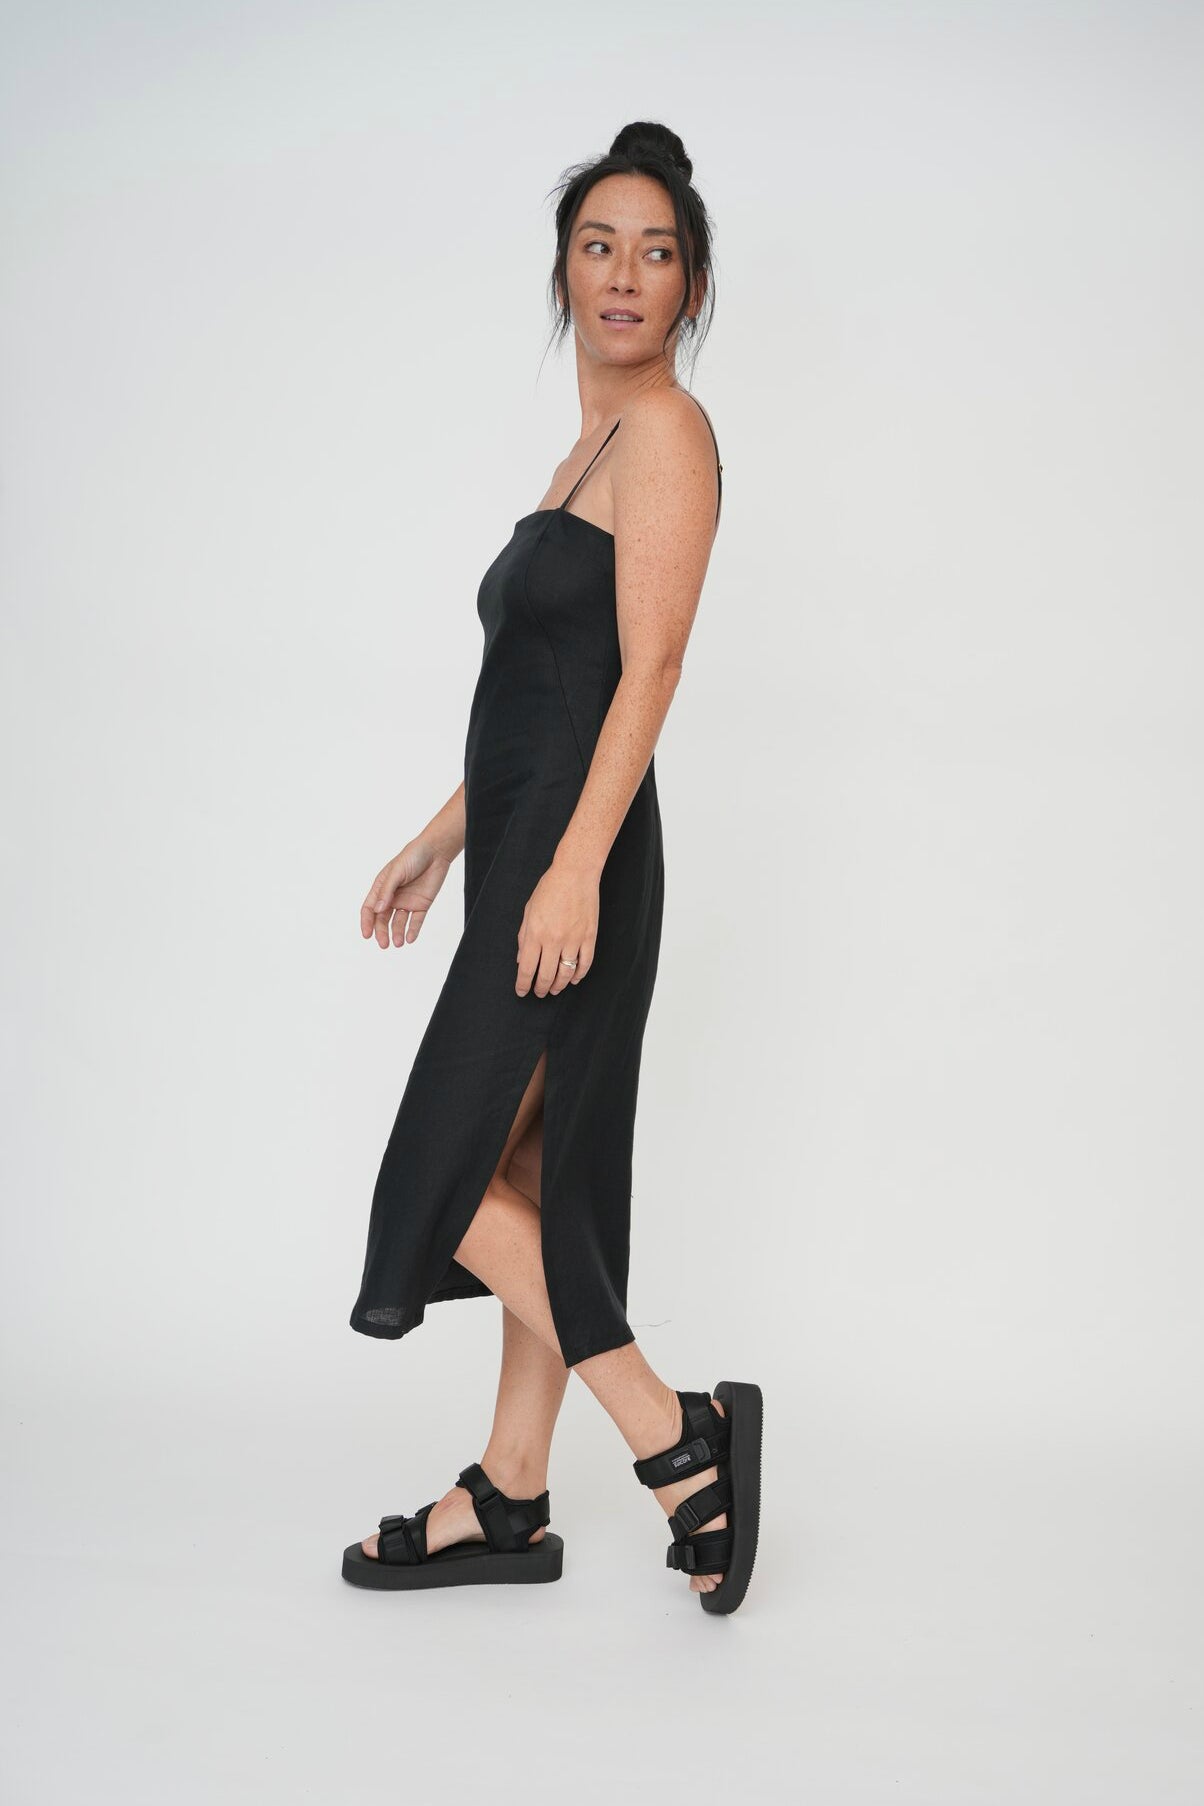 Black strappy dress with split